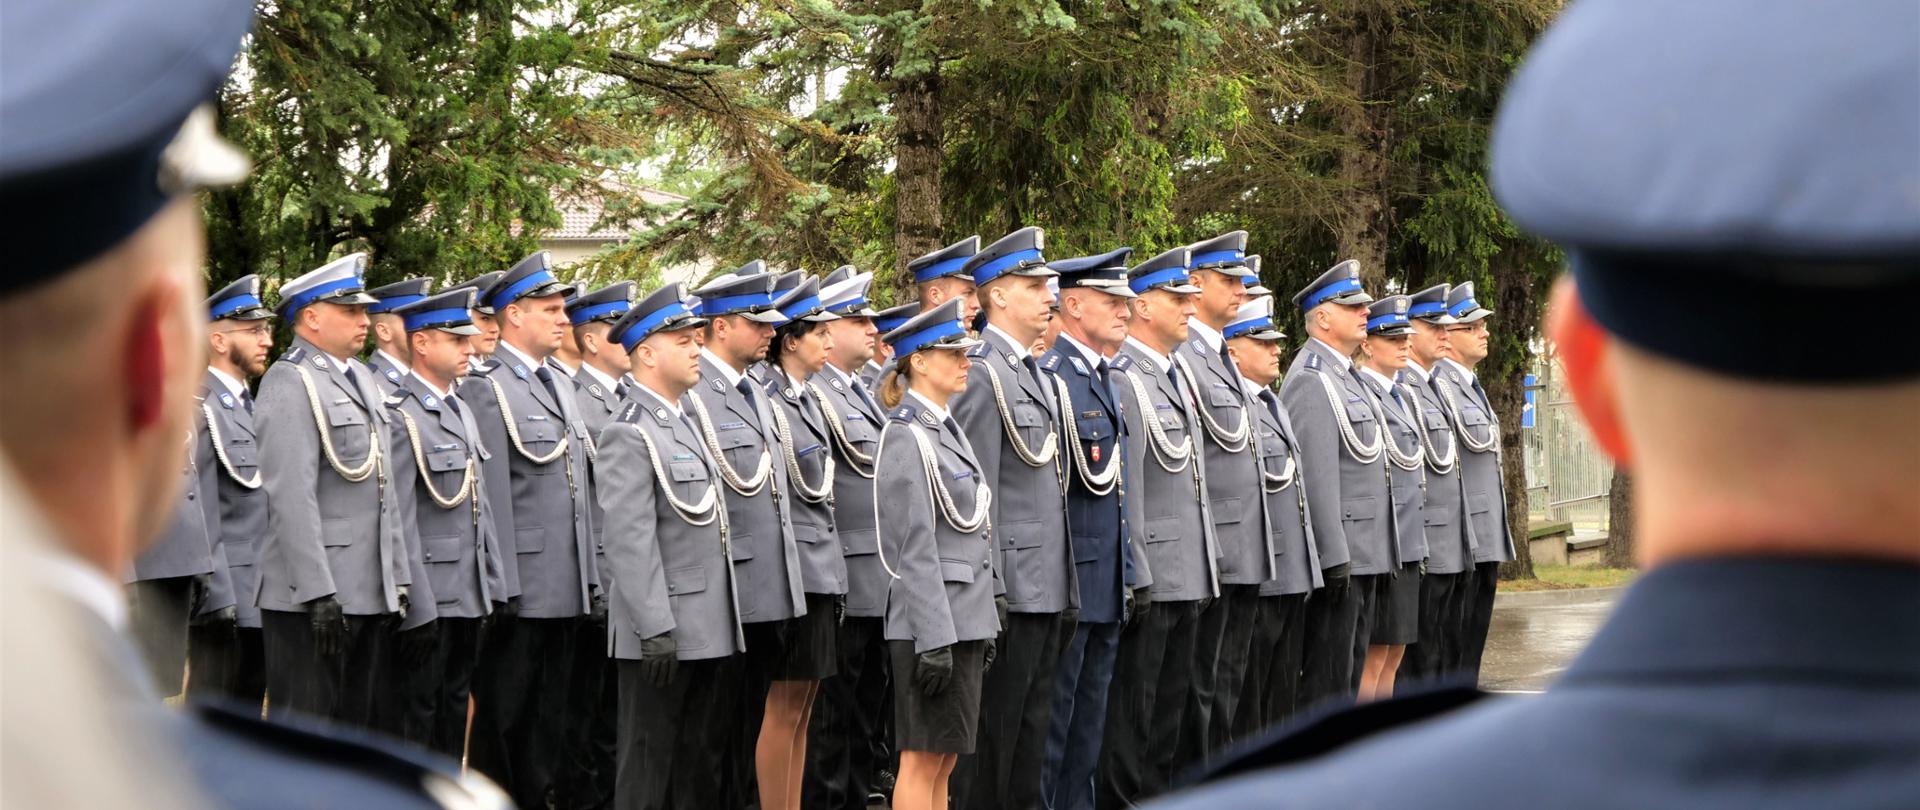 Zdjęcie przedstawia kilkadziesiąt osób stojących w rzędzie w mundurach.